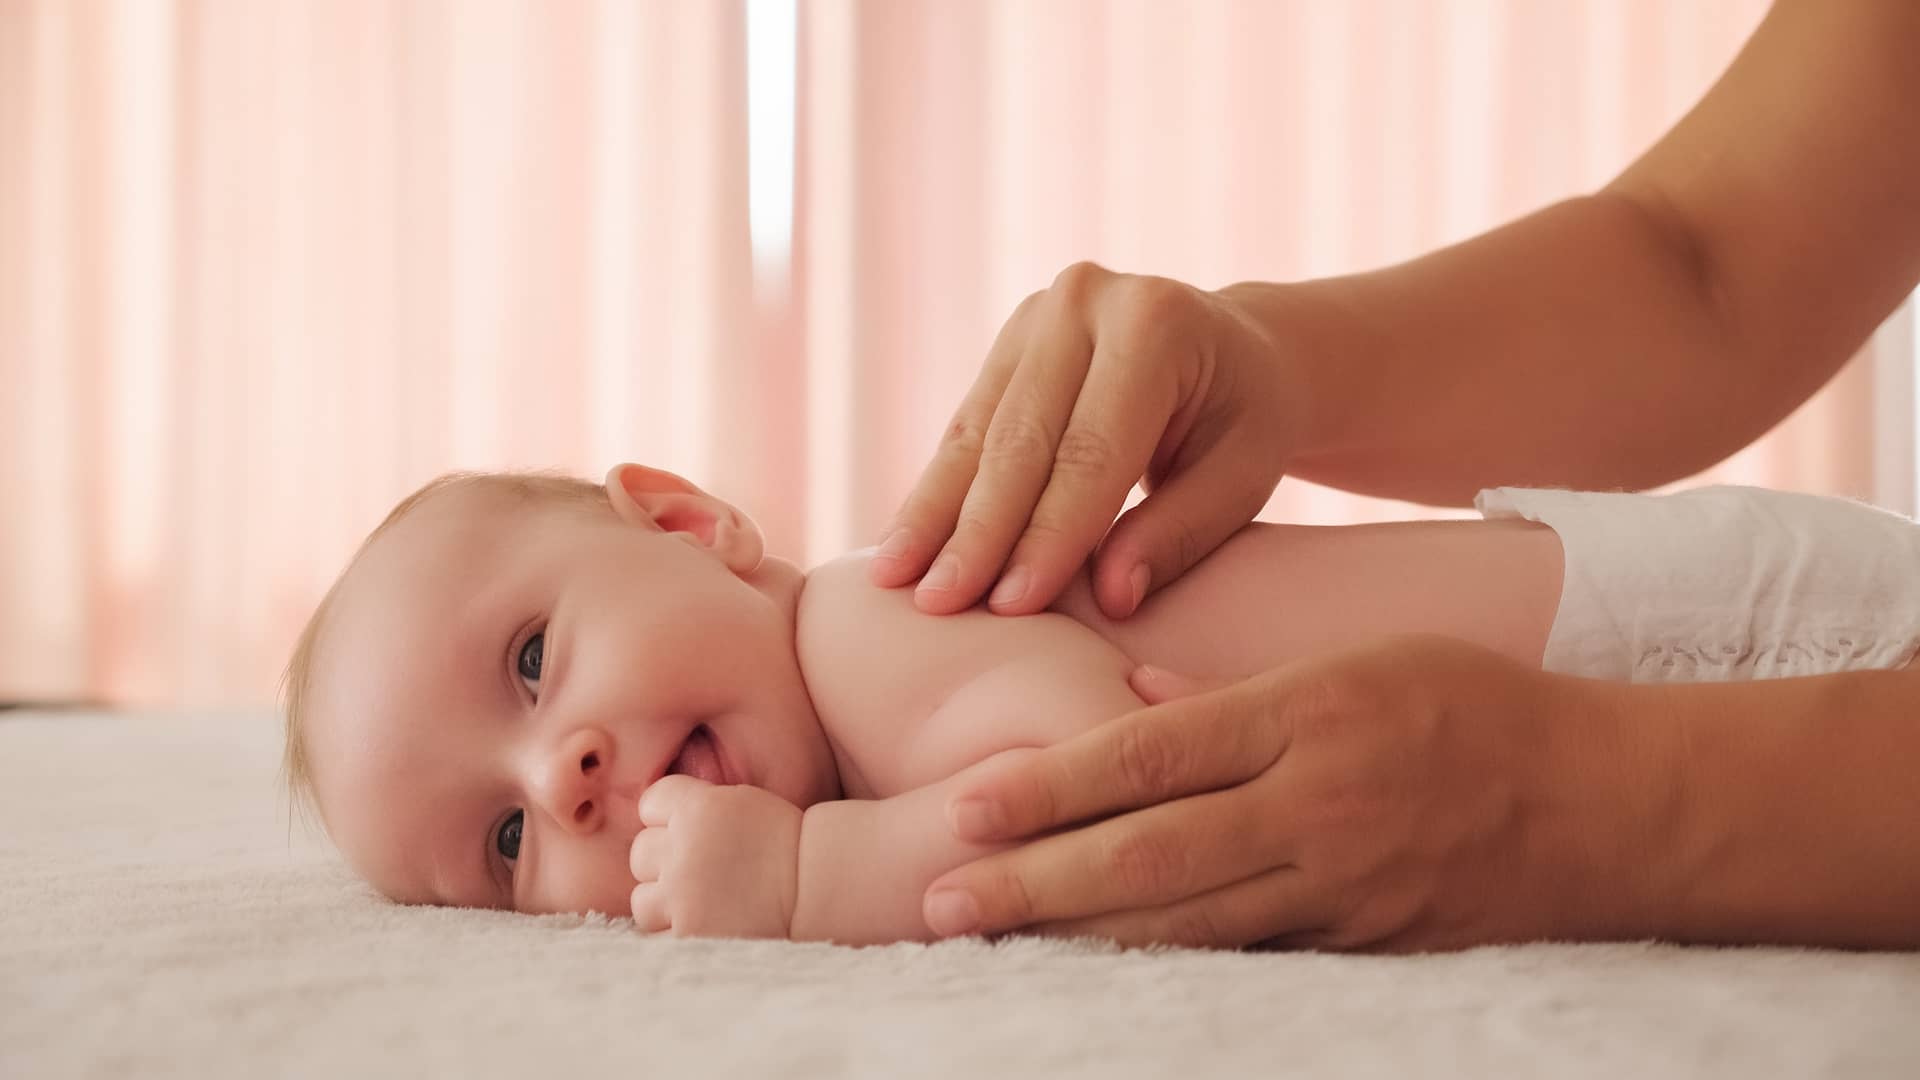 bebe de 6 meses tumbado boca abajo mientras su mama le echa crema en la espalda